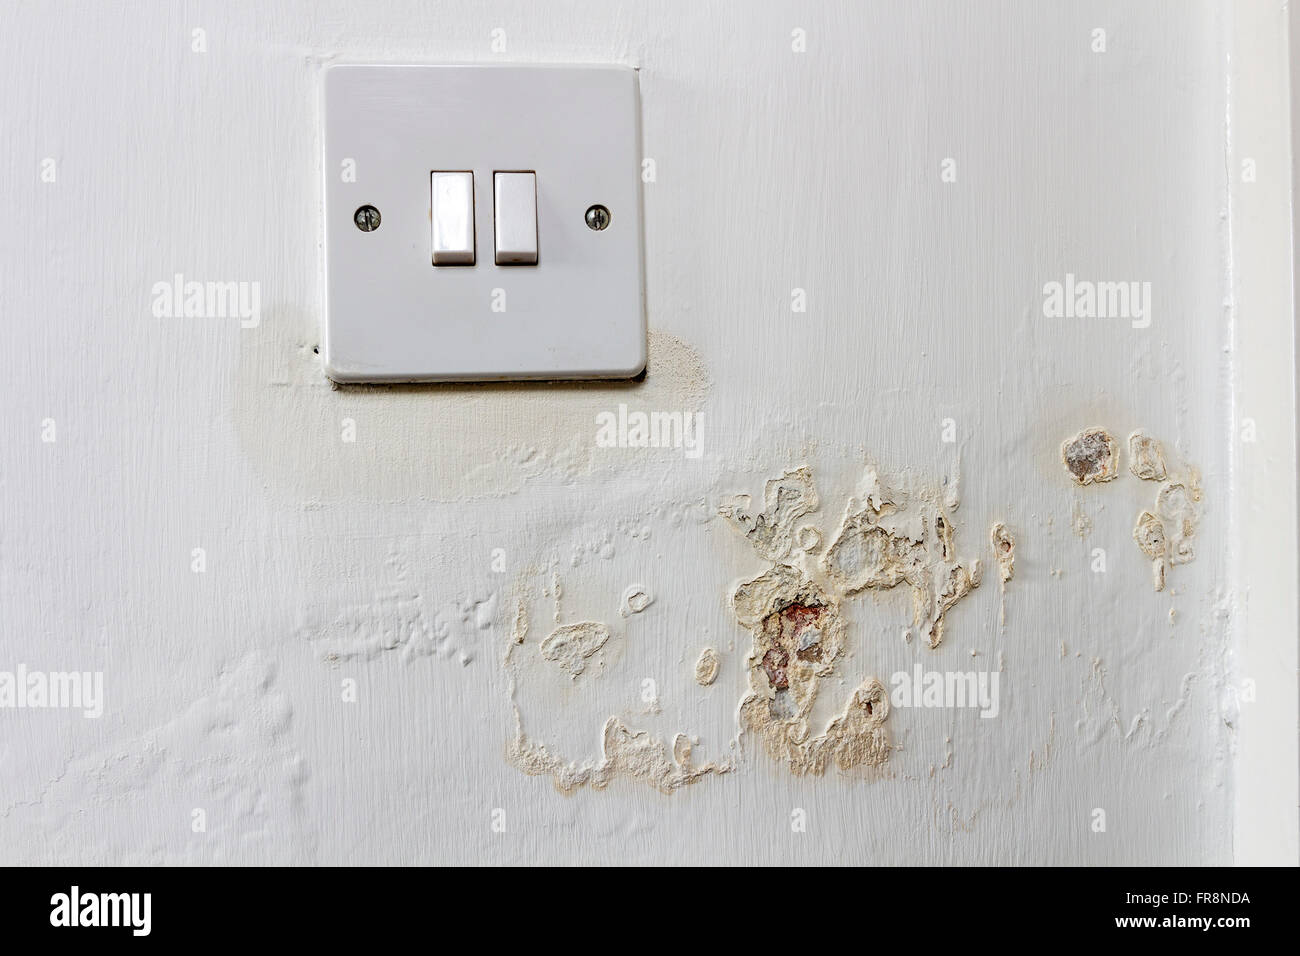 L'humidité s'échappe d'un mur et autour d'un interrupteur d'éclairage dans une maison de location où le locateur n'a pas réussi à régler le problème. Banque D'Images